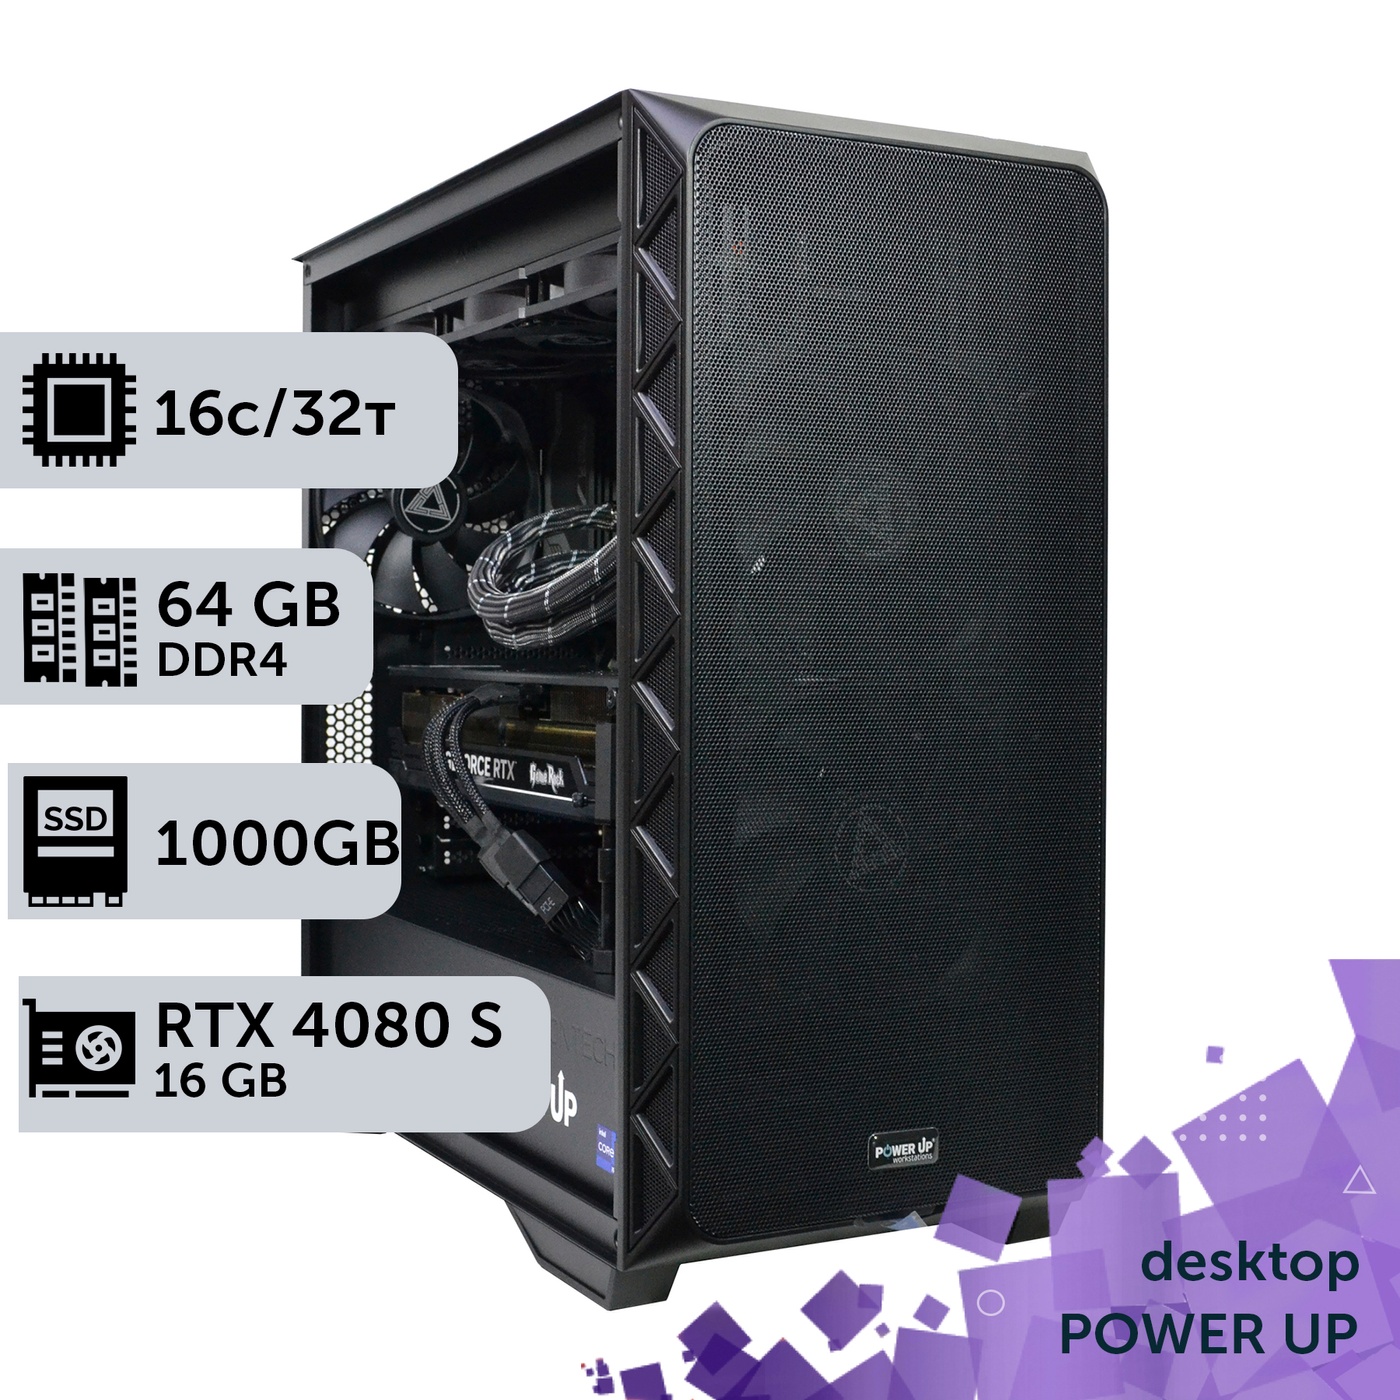 Робоча станція PowerUp Desktop #368 Ryzen 9 5950x/64 GB/HDD 2 TB/SSD 1TB/GeForce RTX 4080 Super 16GB